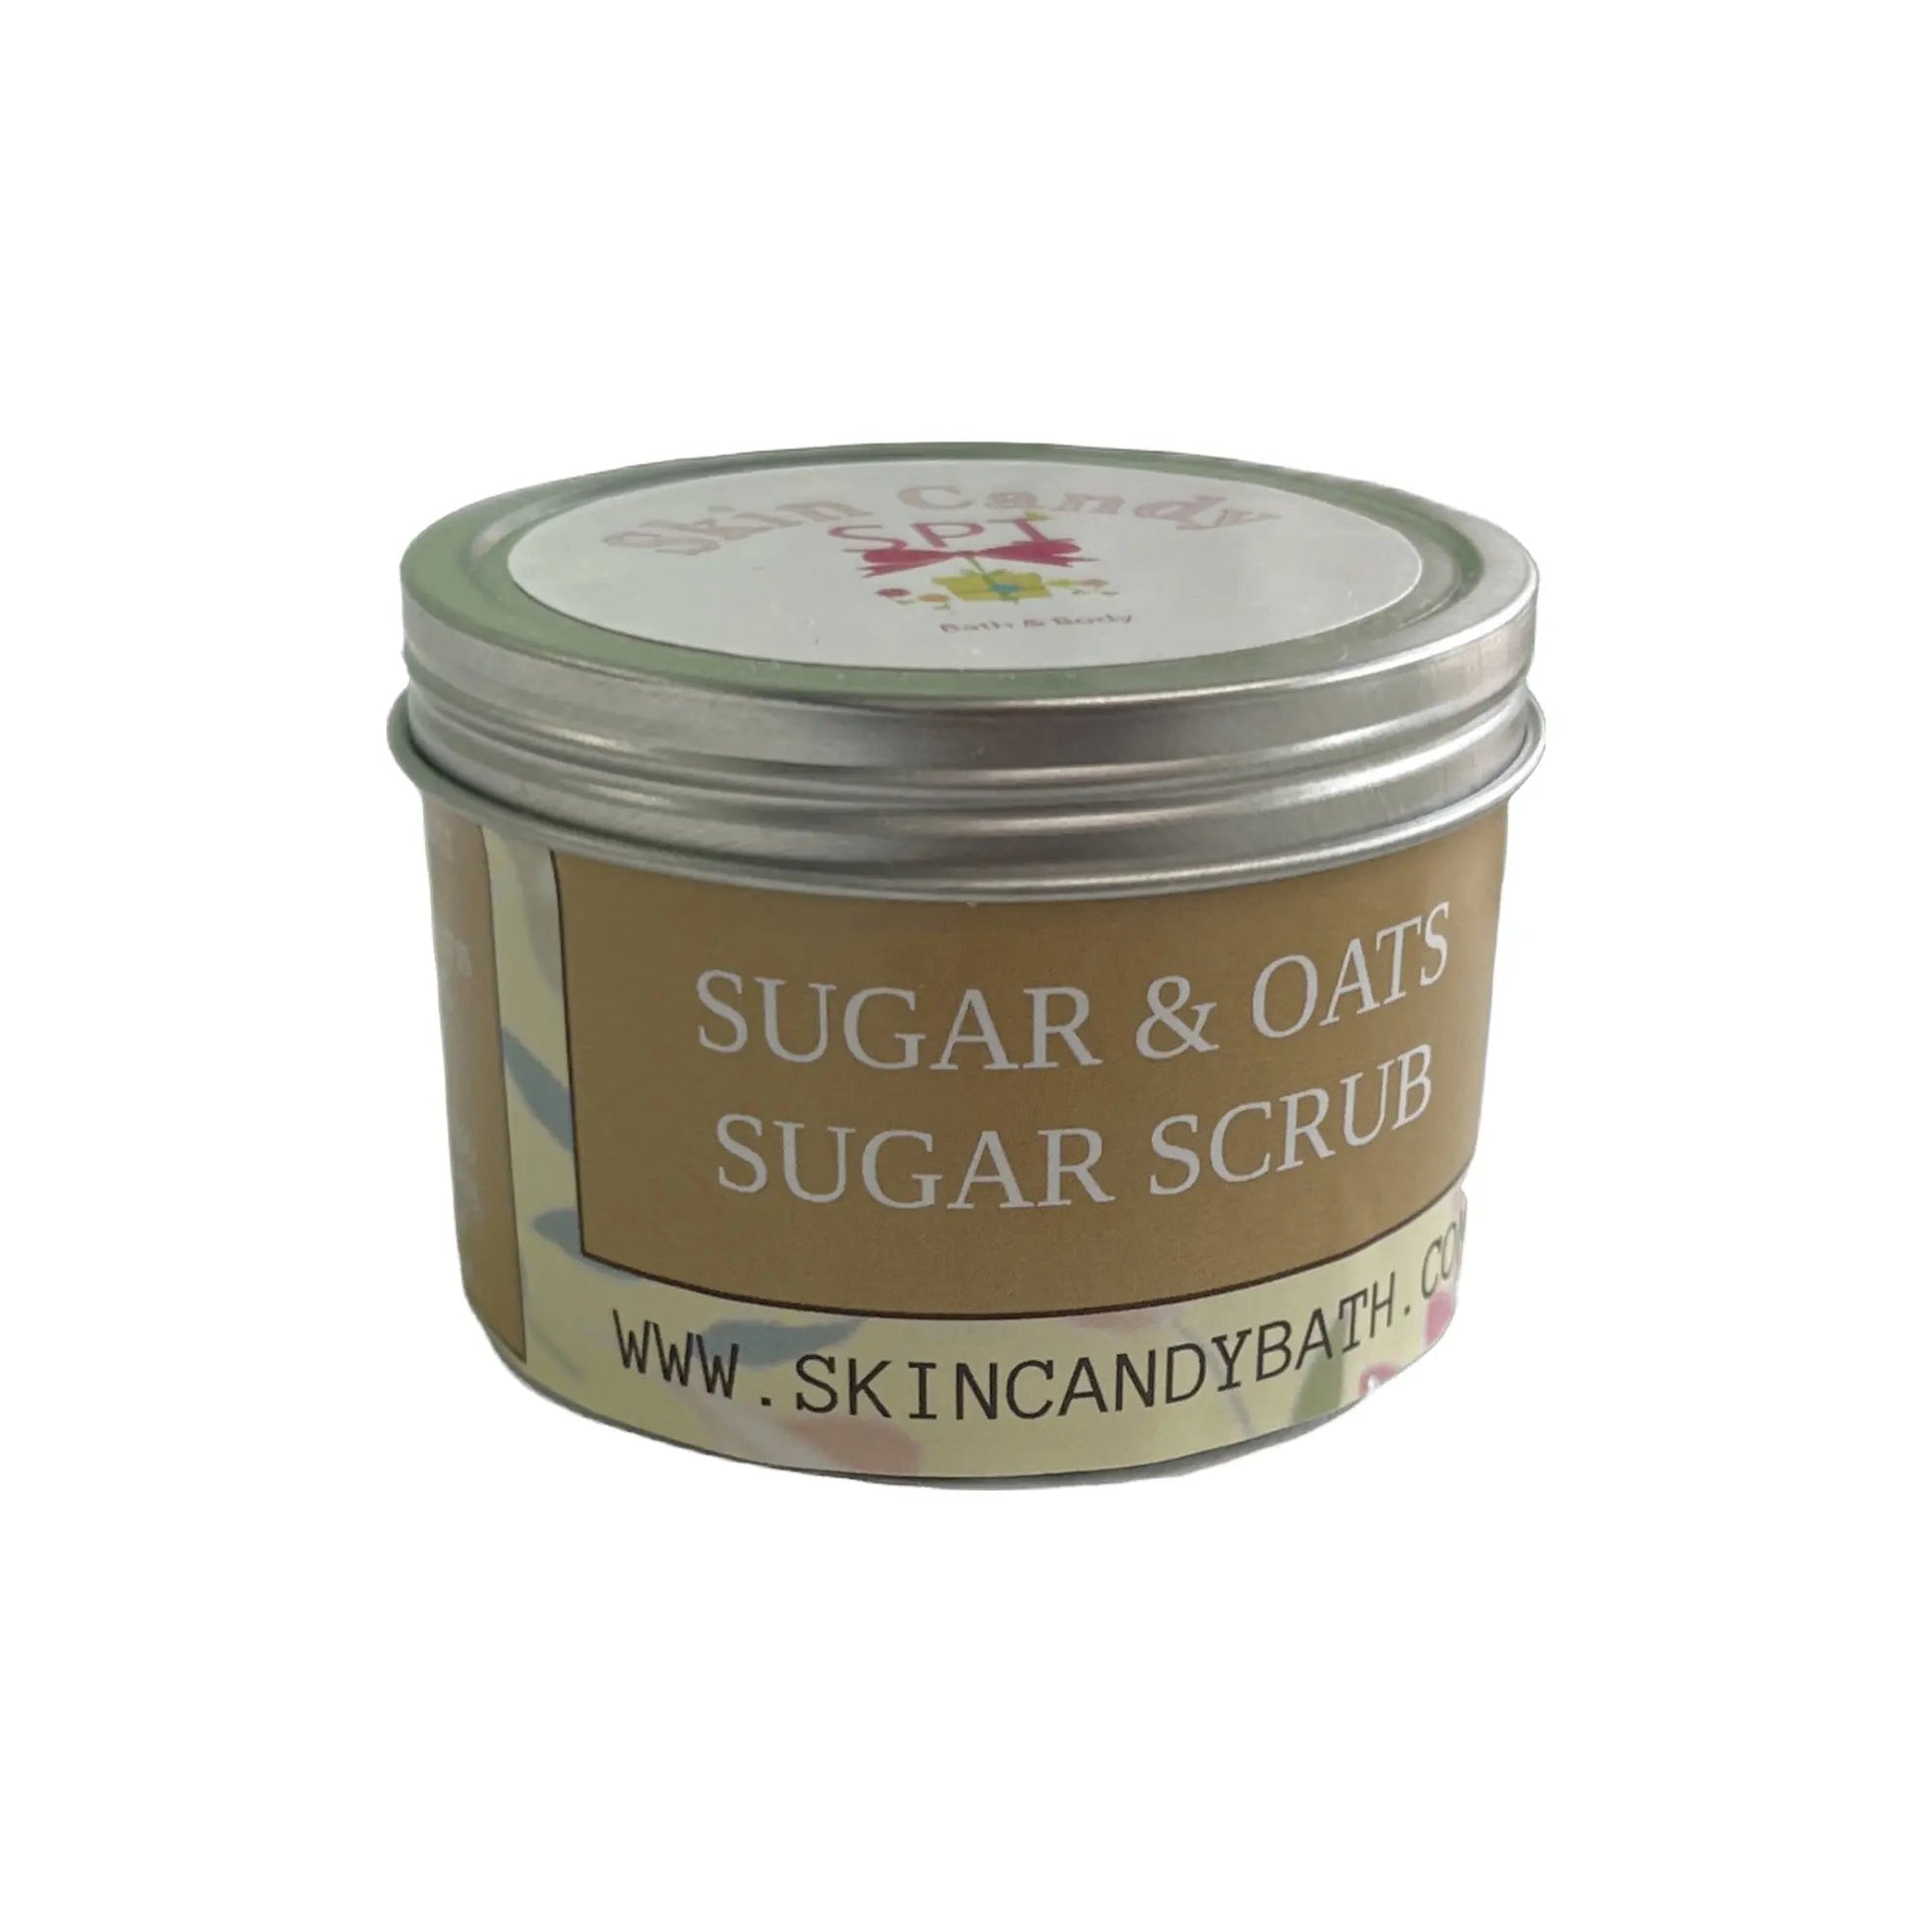 Sugar & Oats Sugar Scrub - Skin Candy Bath & Body